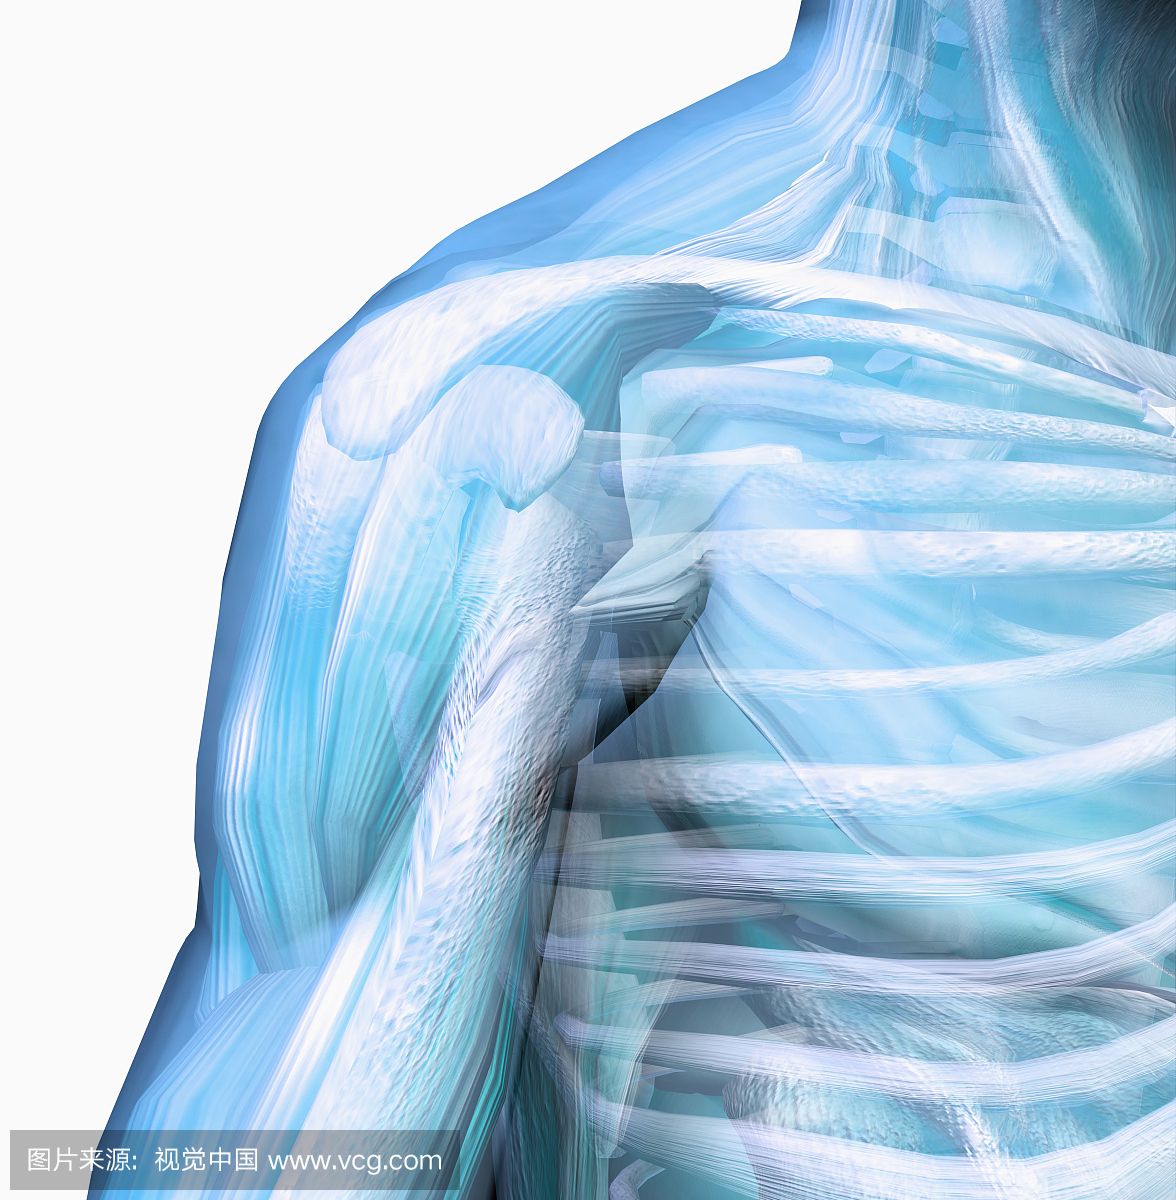 人类男性肩膀球窝关节,显示骨骼和肌肉。